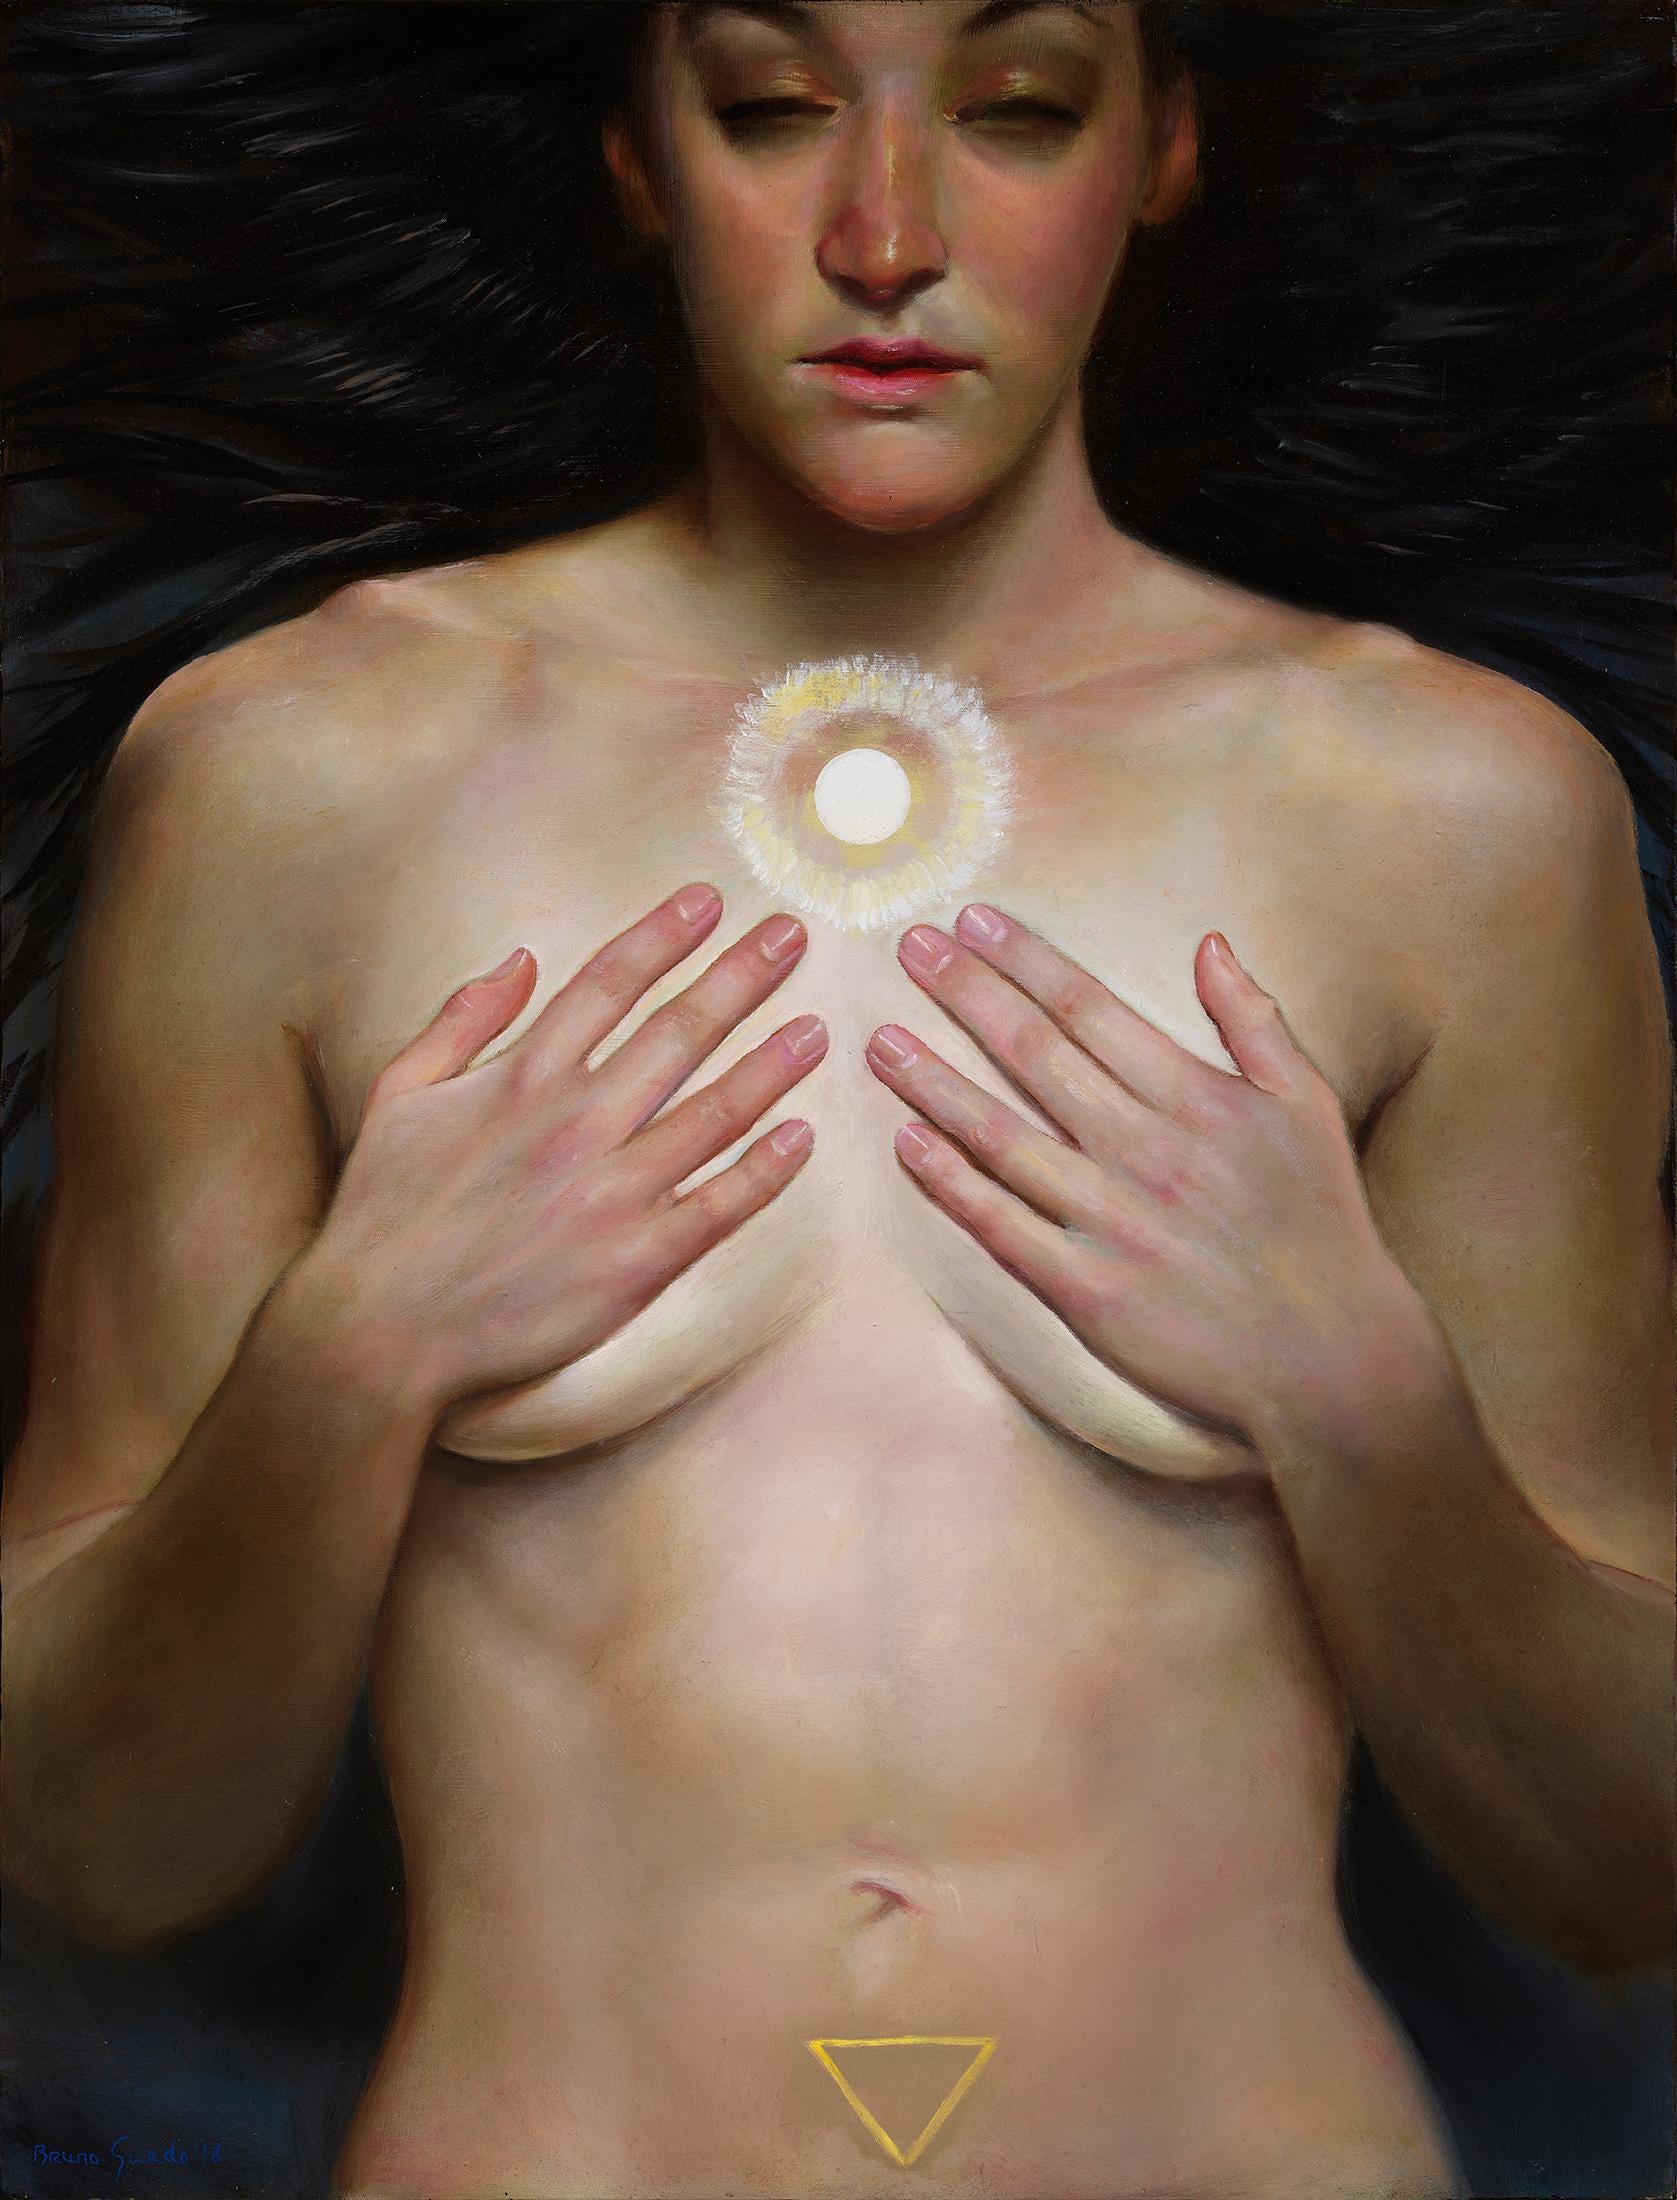 Bruno Surdo Nude Painting – The Oracle, nackte Frau mit den Händen, die ihre Brüste bedecken, langes dunkles Haar